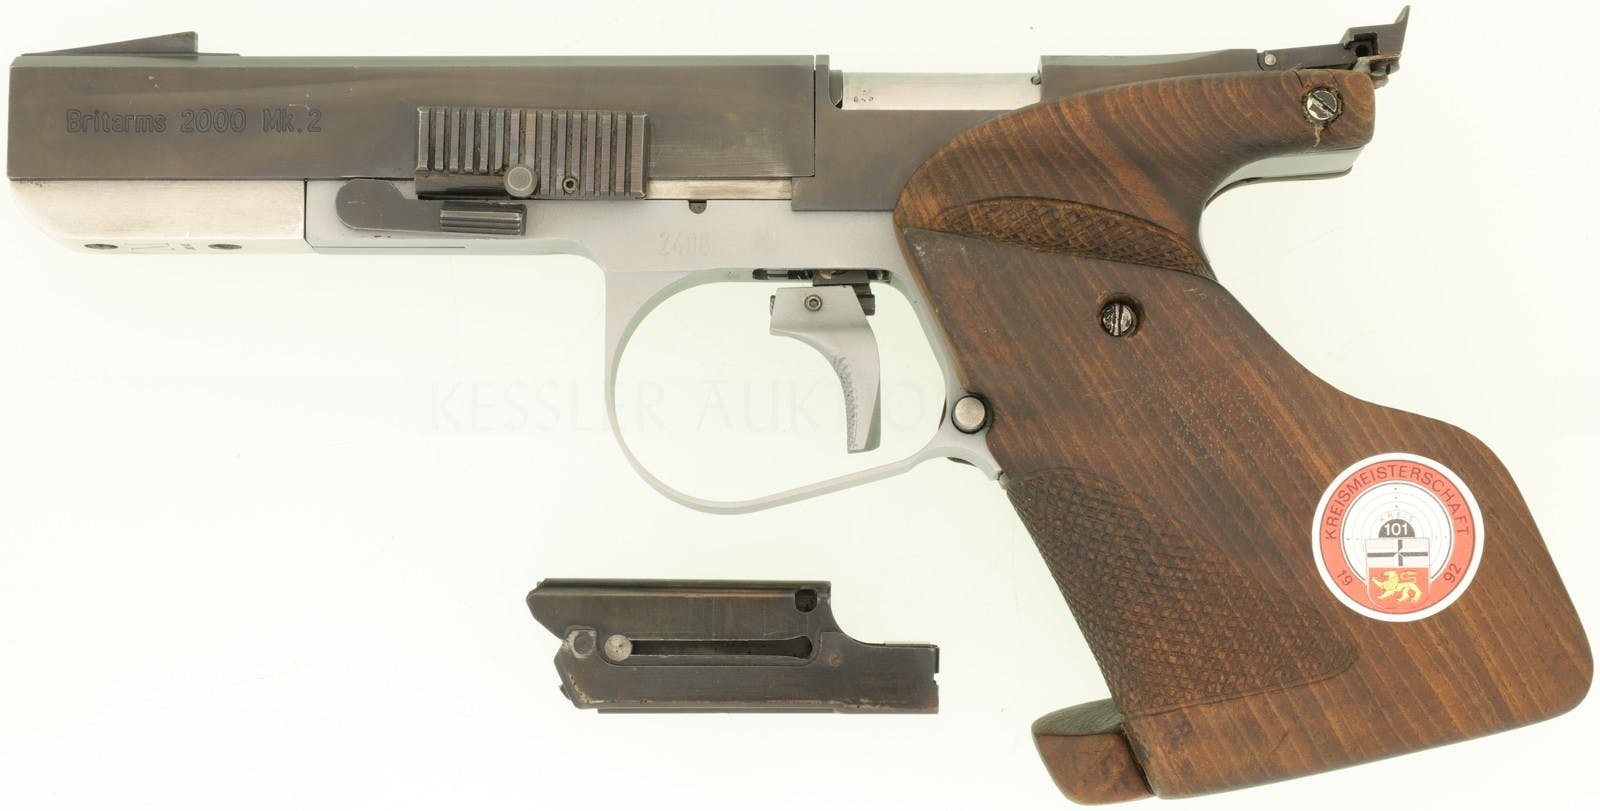 Britische Westlake Engineering BritArms 2000. Wird nicht mehr hergestellt aufgrund der Waffengesetze in Grossbritannien; Die Firma stellt heute nurmehr Vorderlader-Revolver her.